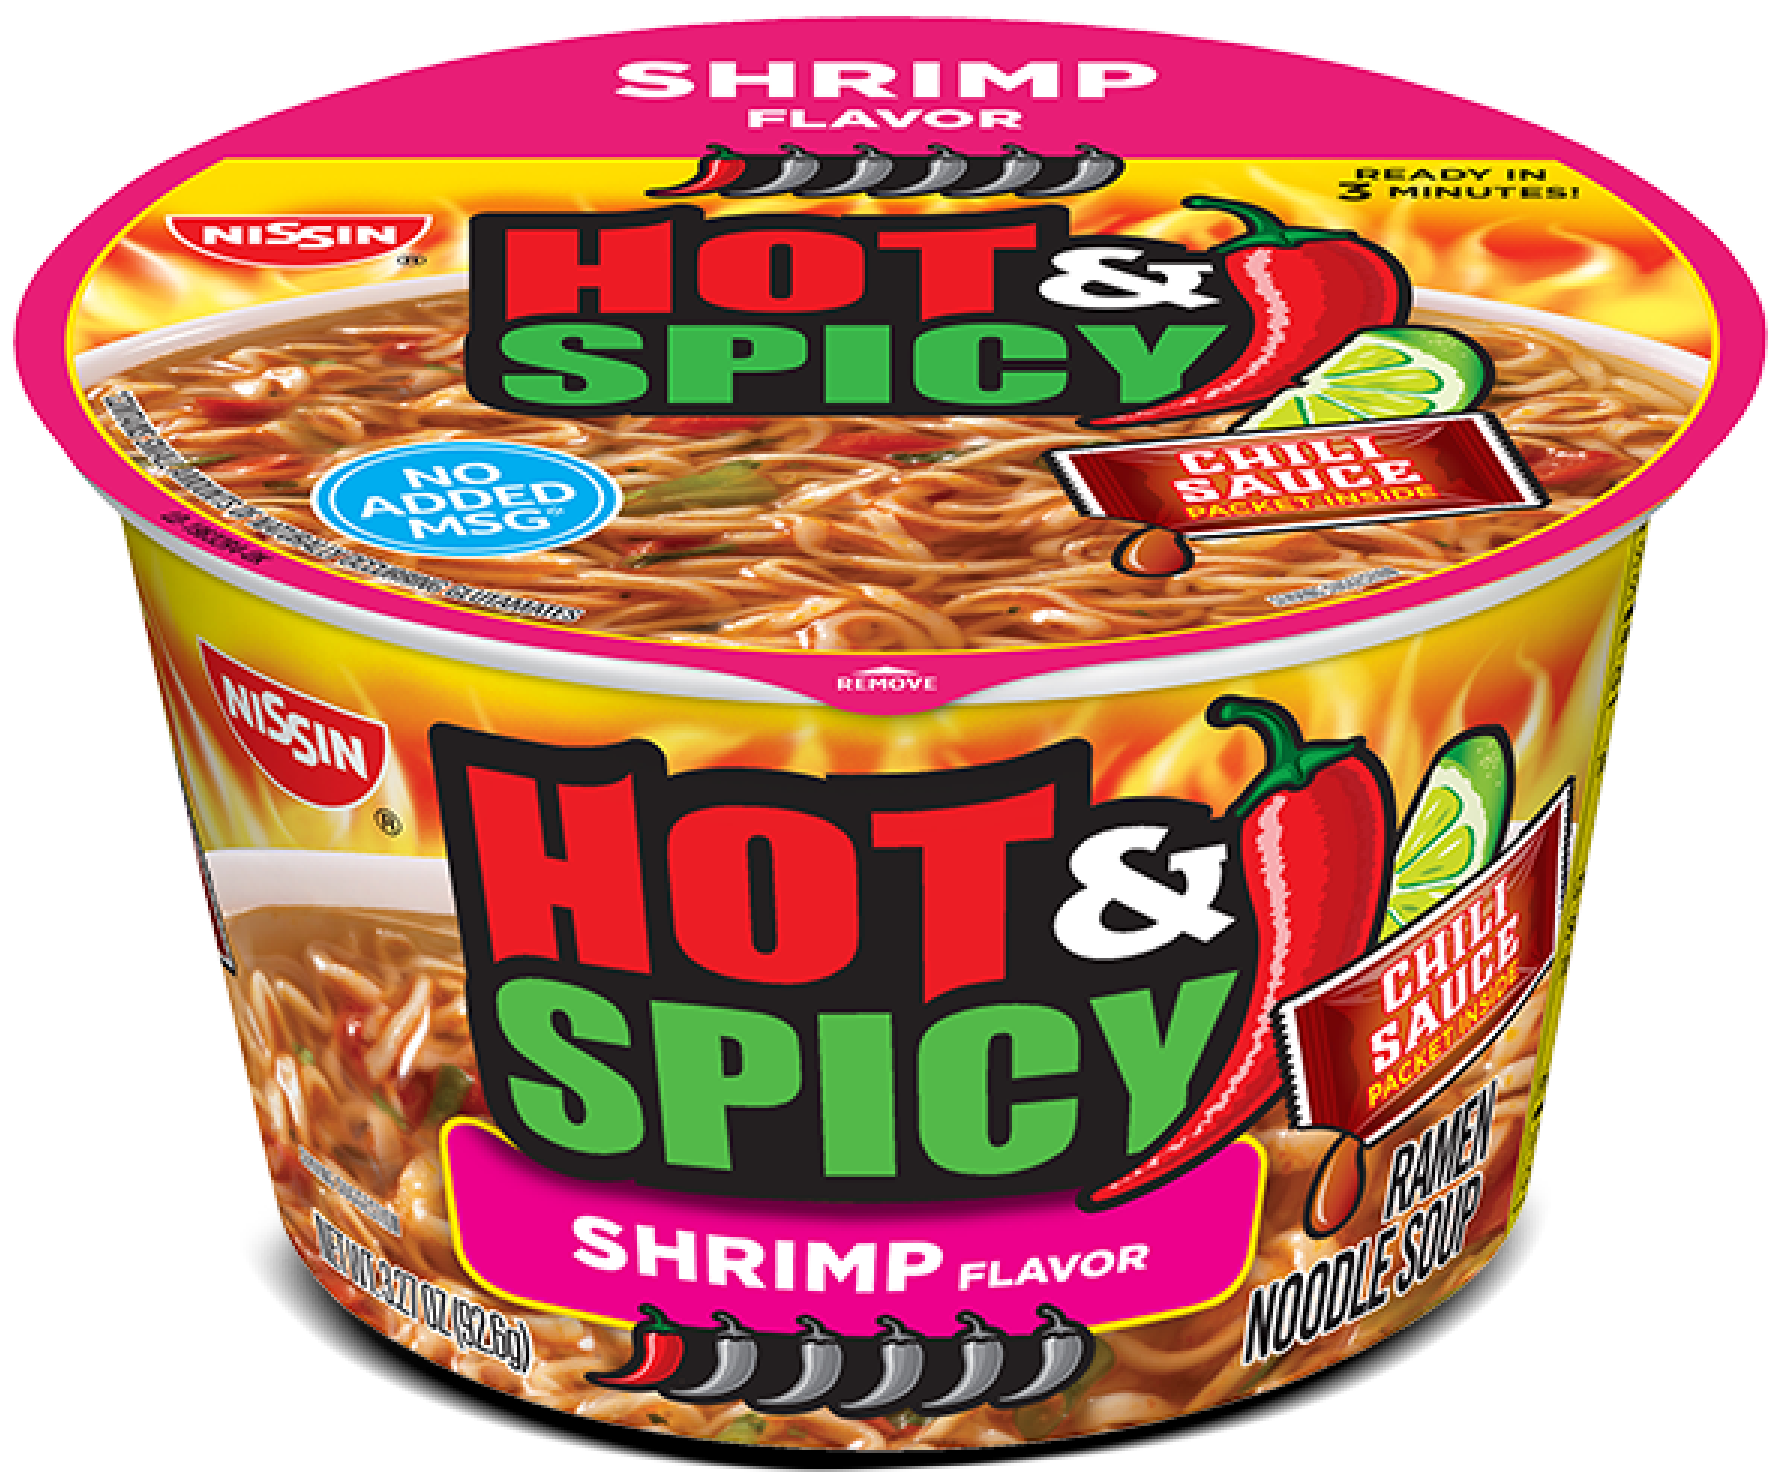 Nissin® Cup Noodles® Chicken Flavor Ramen Noodle Soup 24 pk Case, 24 ct /  2.25 oz - Food 4 Less